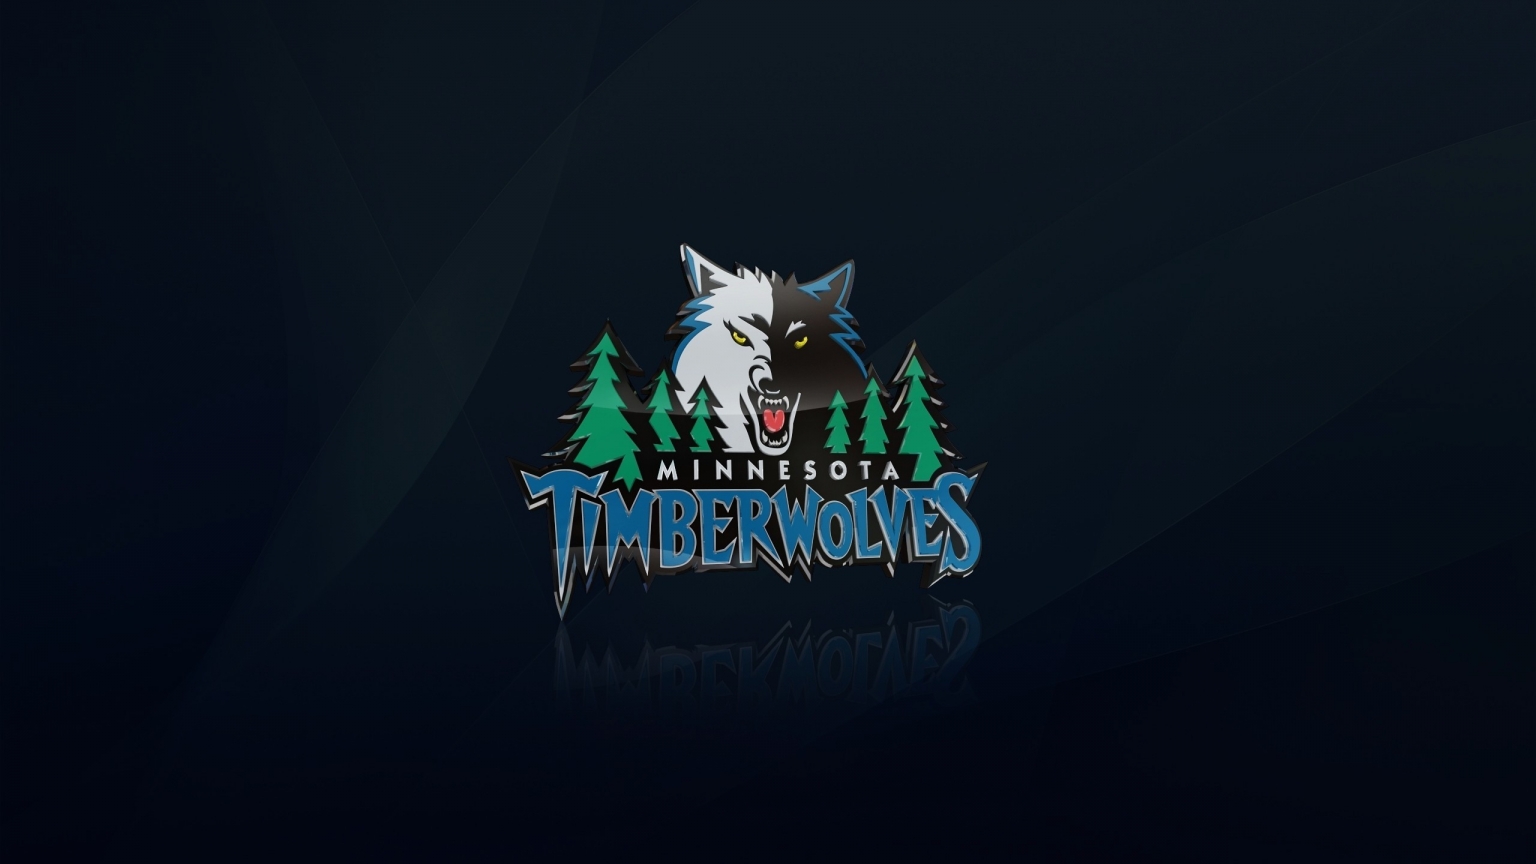 Minnesota Timberwolves Logo for 1536 x 864 HDTV resolution